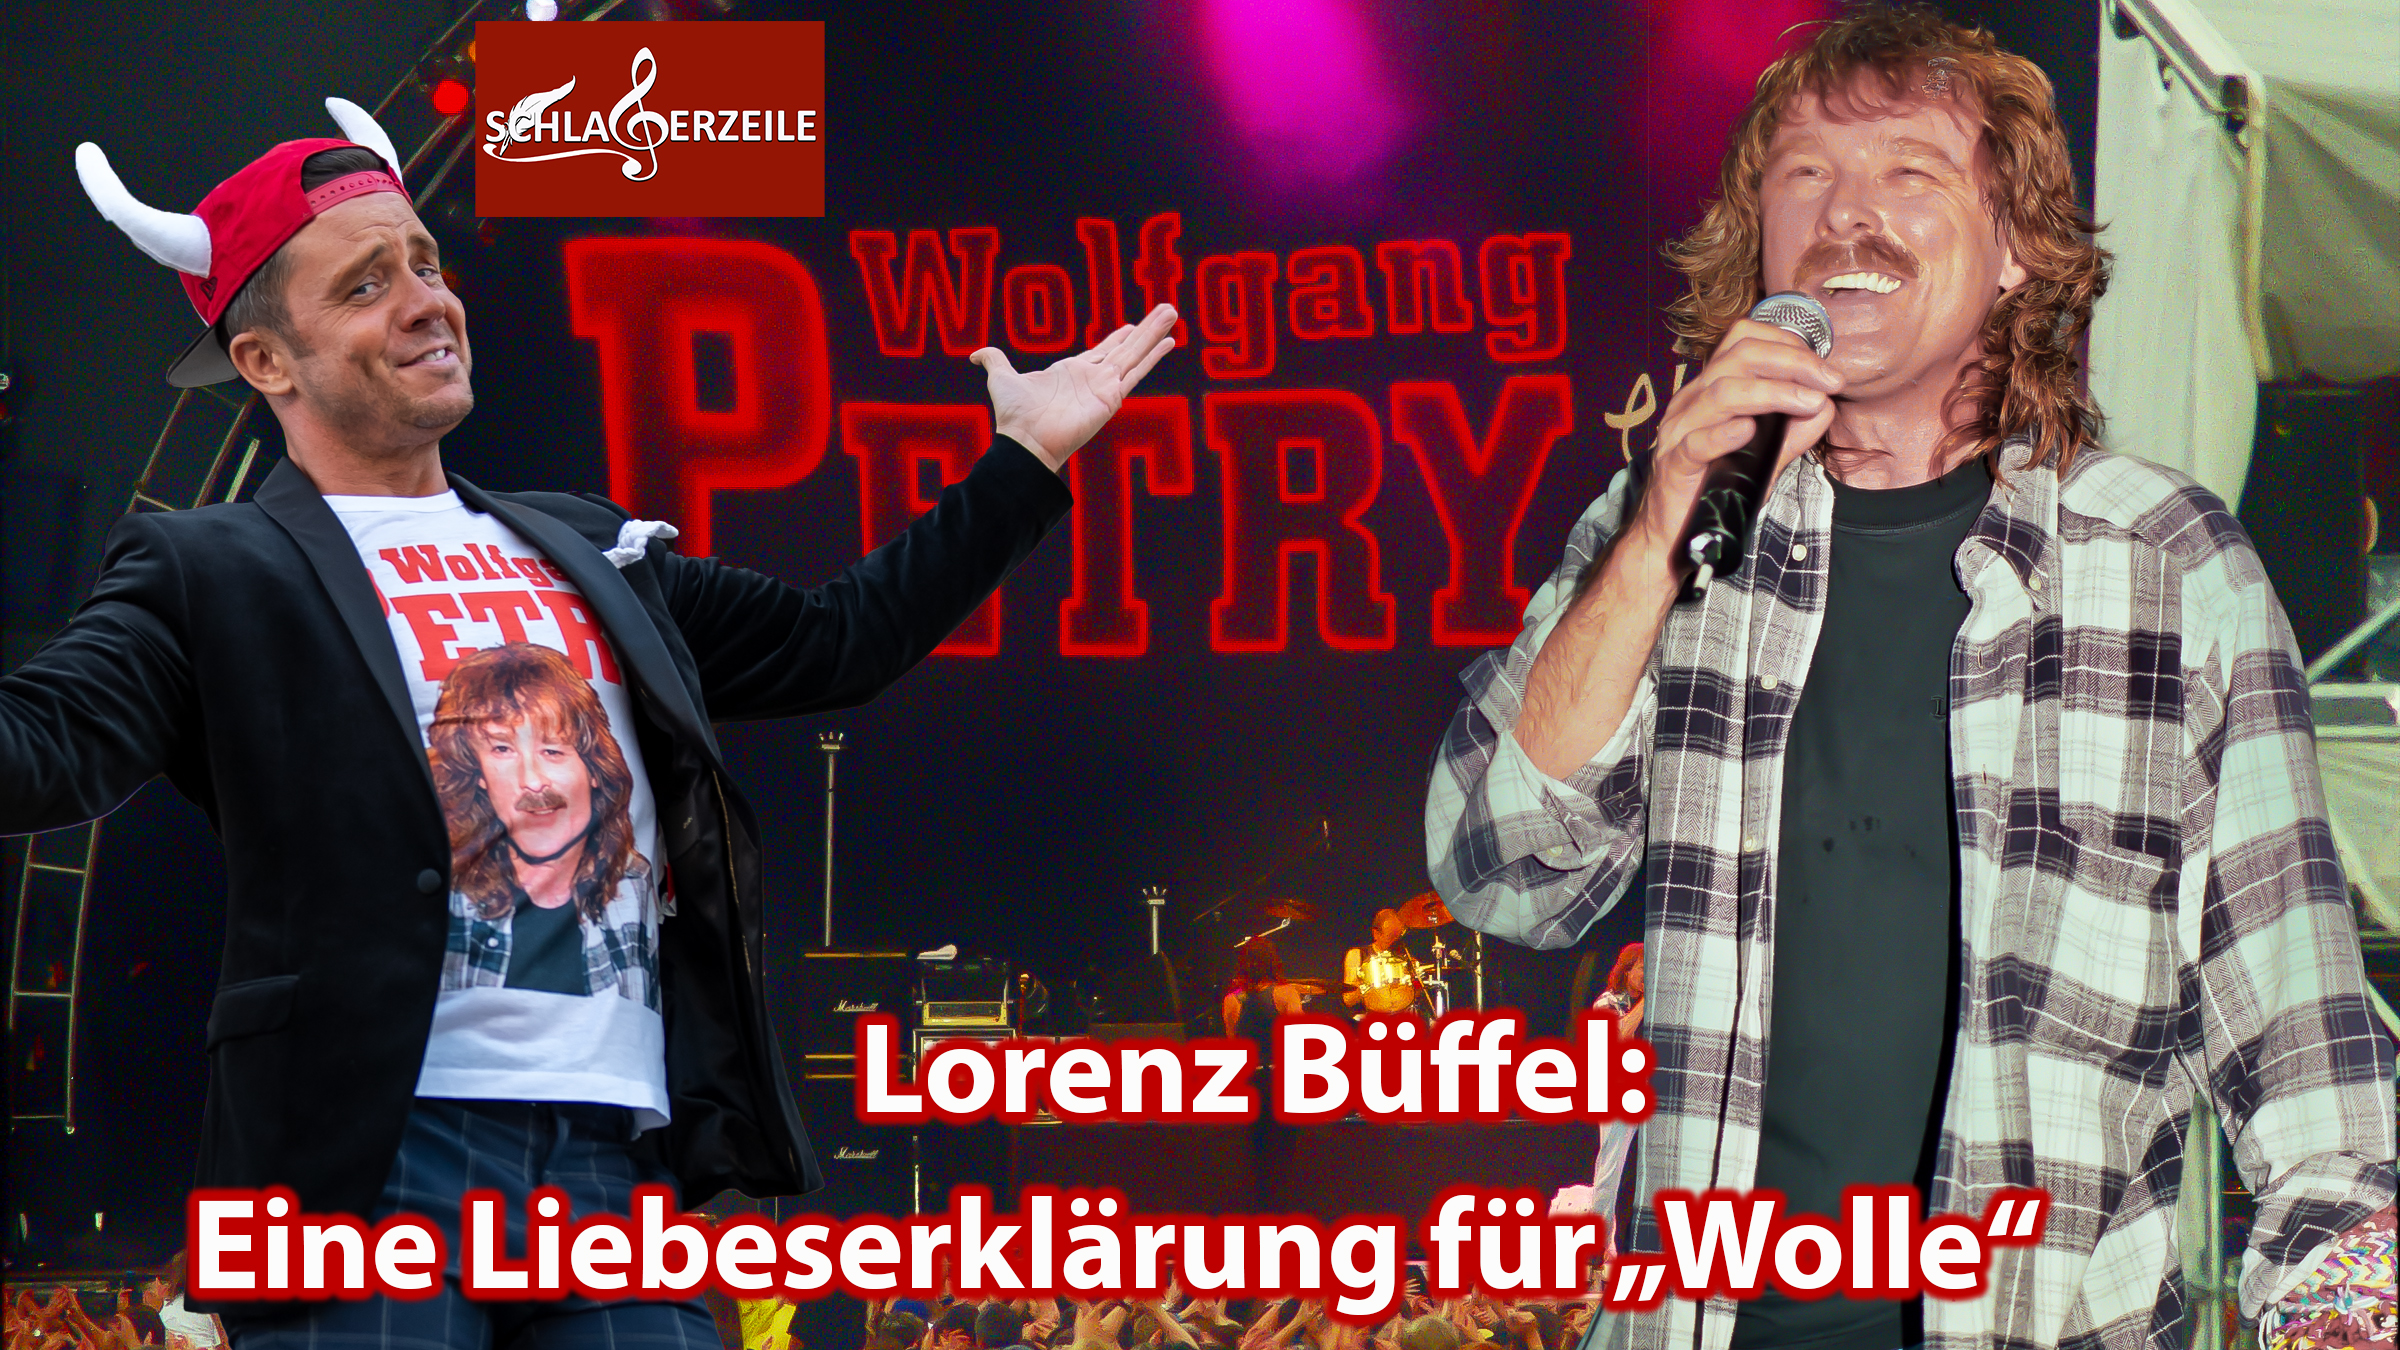 Lorenz Büffel, Wolle Petry